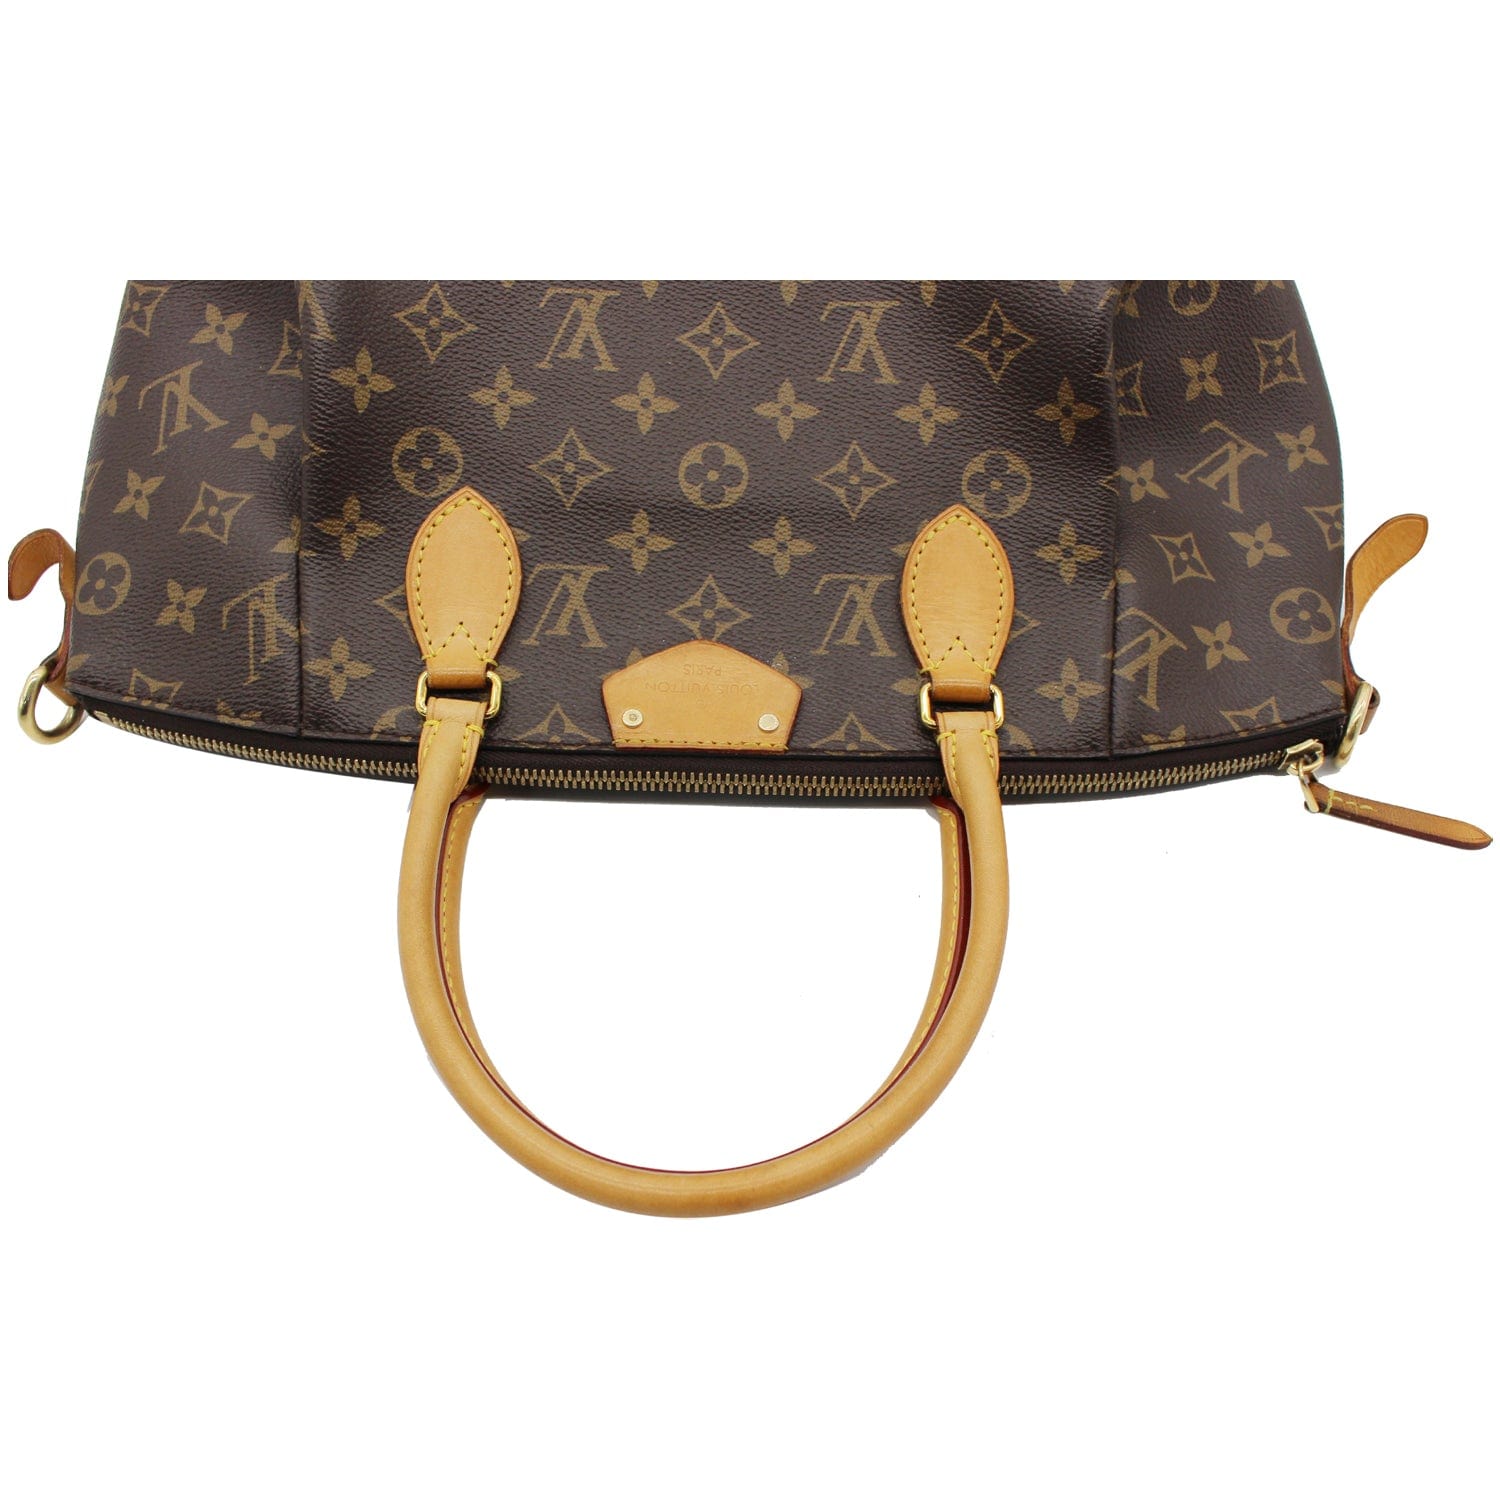 Authentic Louis Vuitton Turenne MM Monogram Canvas Shoulder Bag EXCELLENT